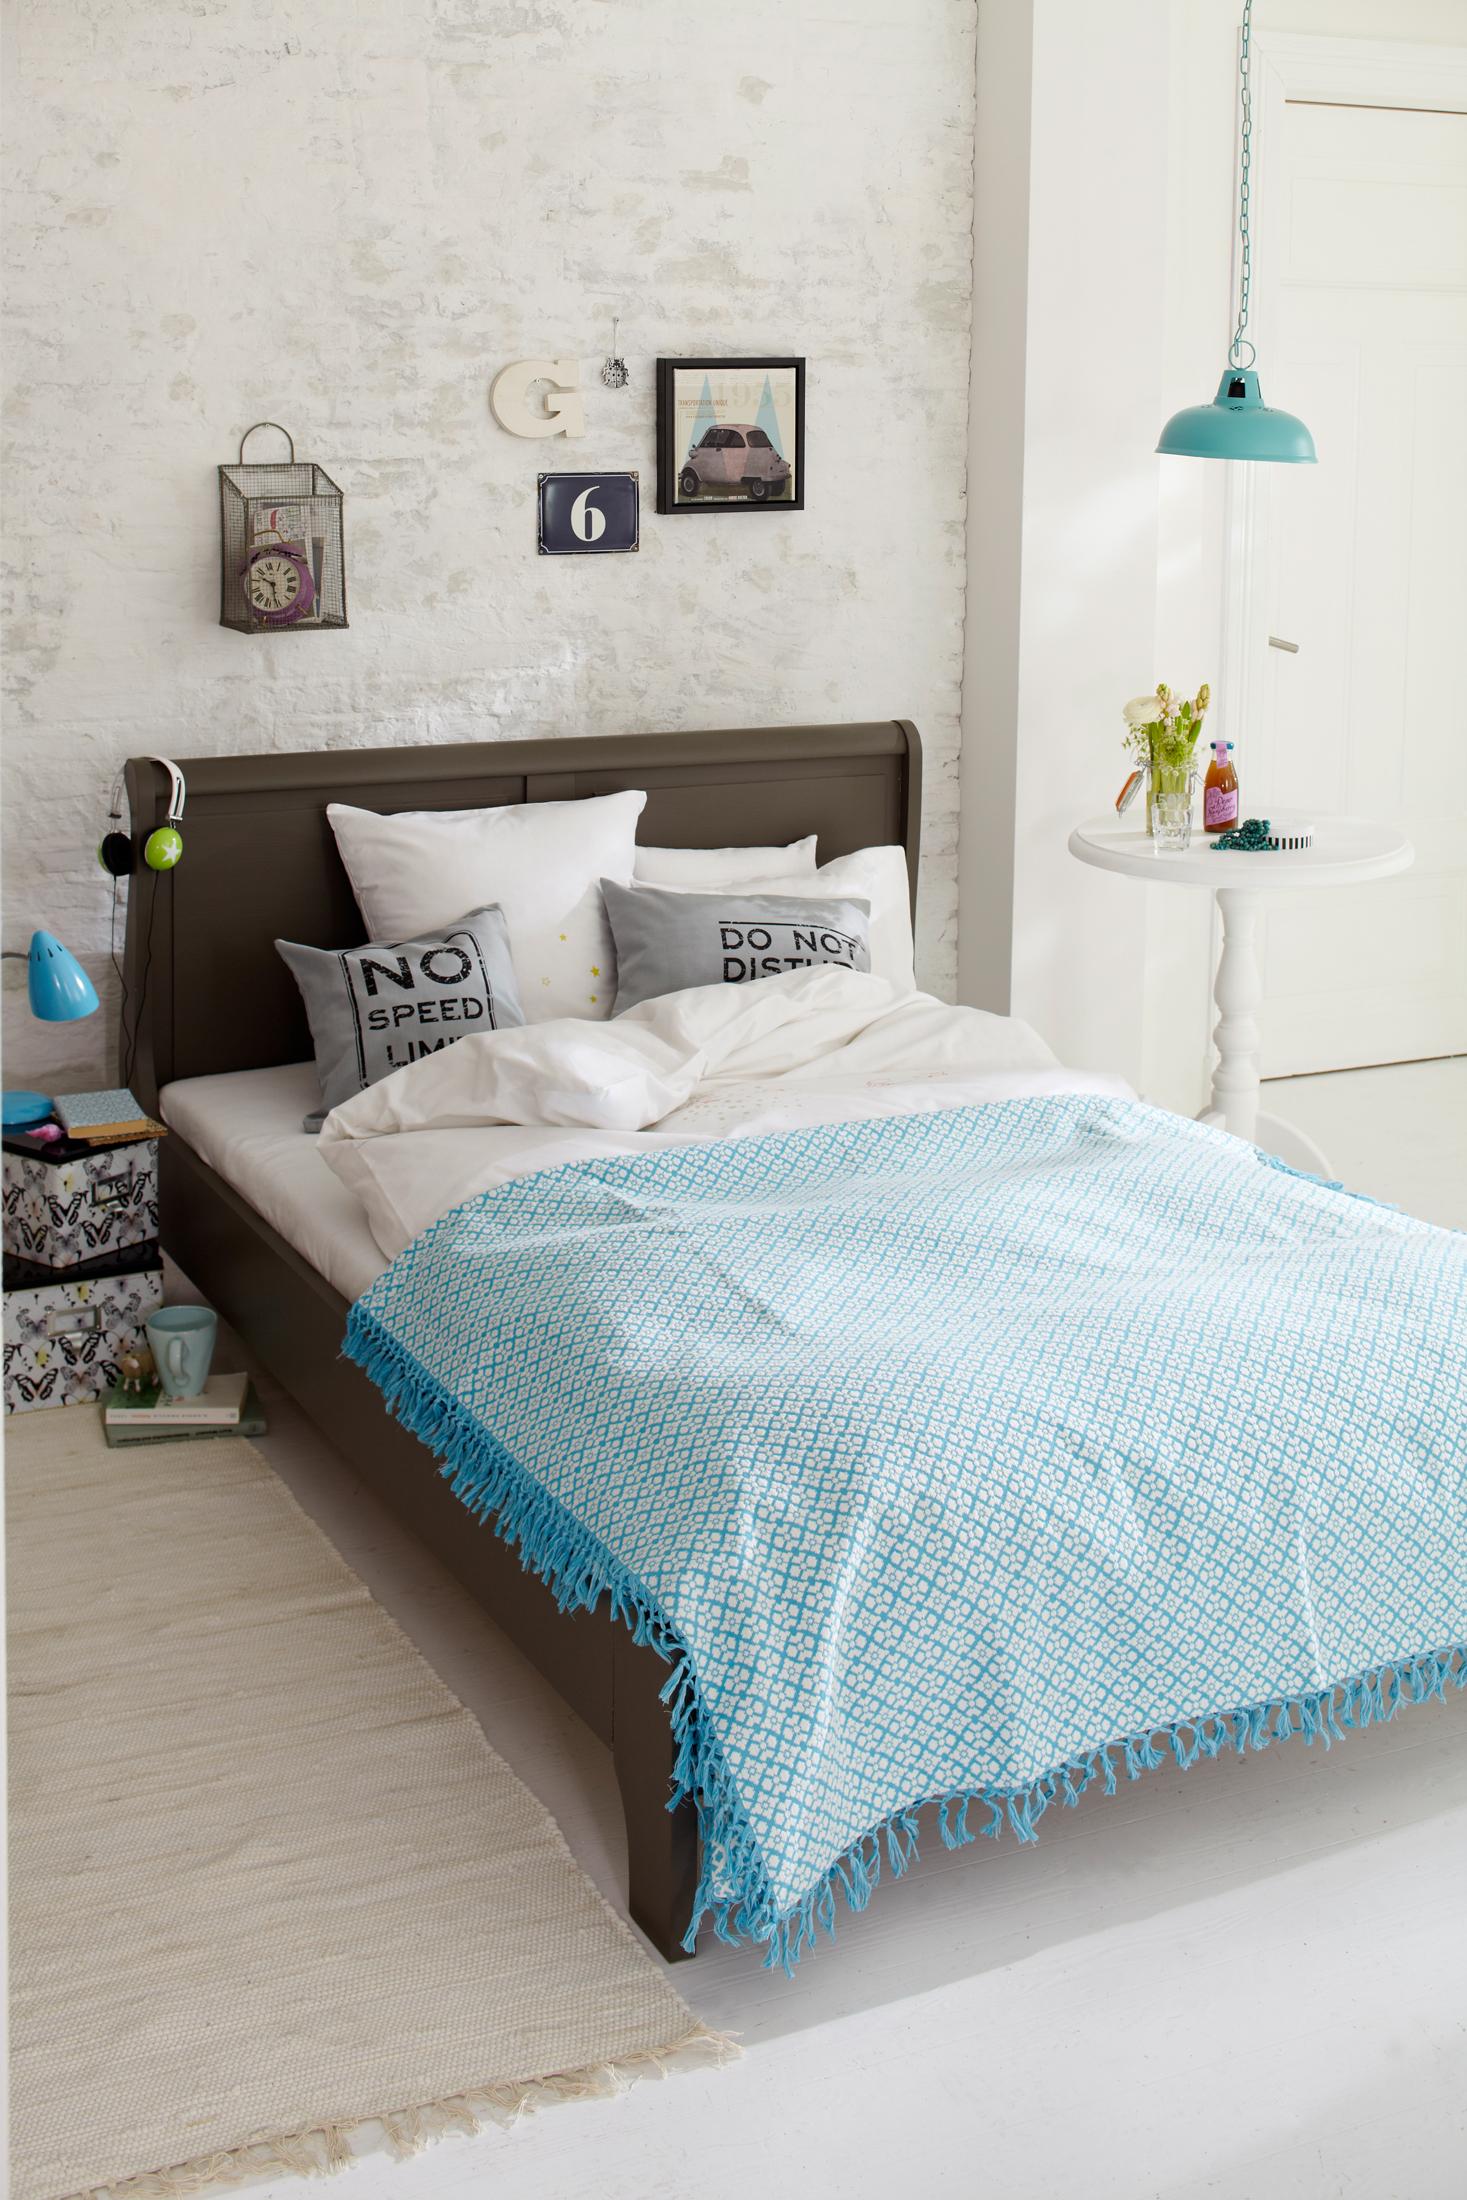 Schlafzimmer mit weißer Mauerwand und türkisfarbener Deko #wanddeko #türkisfarbenedeko ©Car Selbstbaumöbel